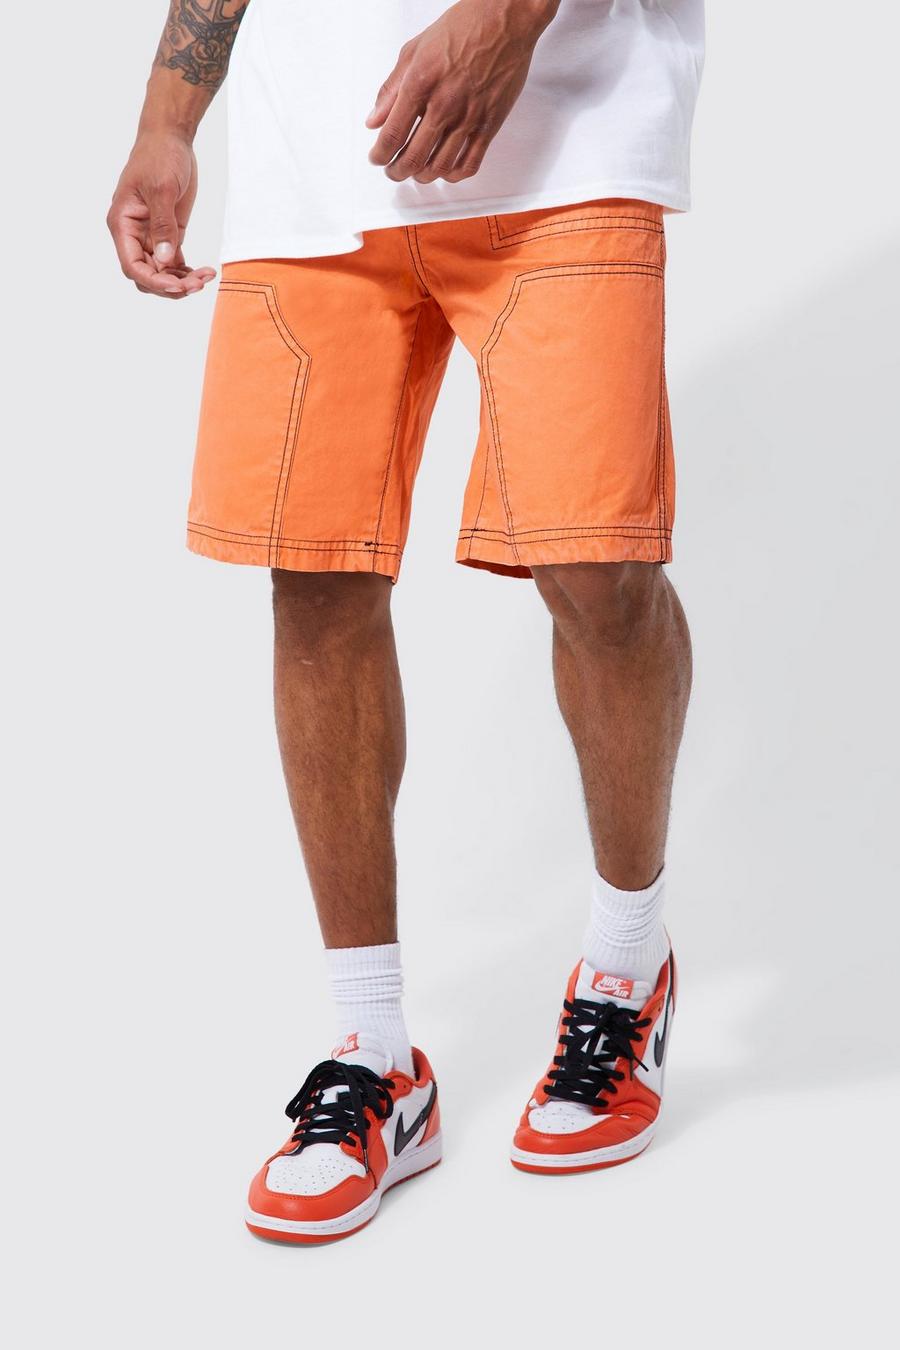 Pantaloncini Carpenter rilassati elasticizzati a contrasto, Orange arancio